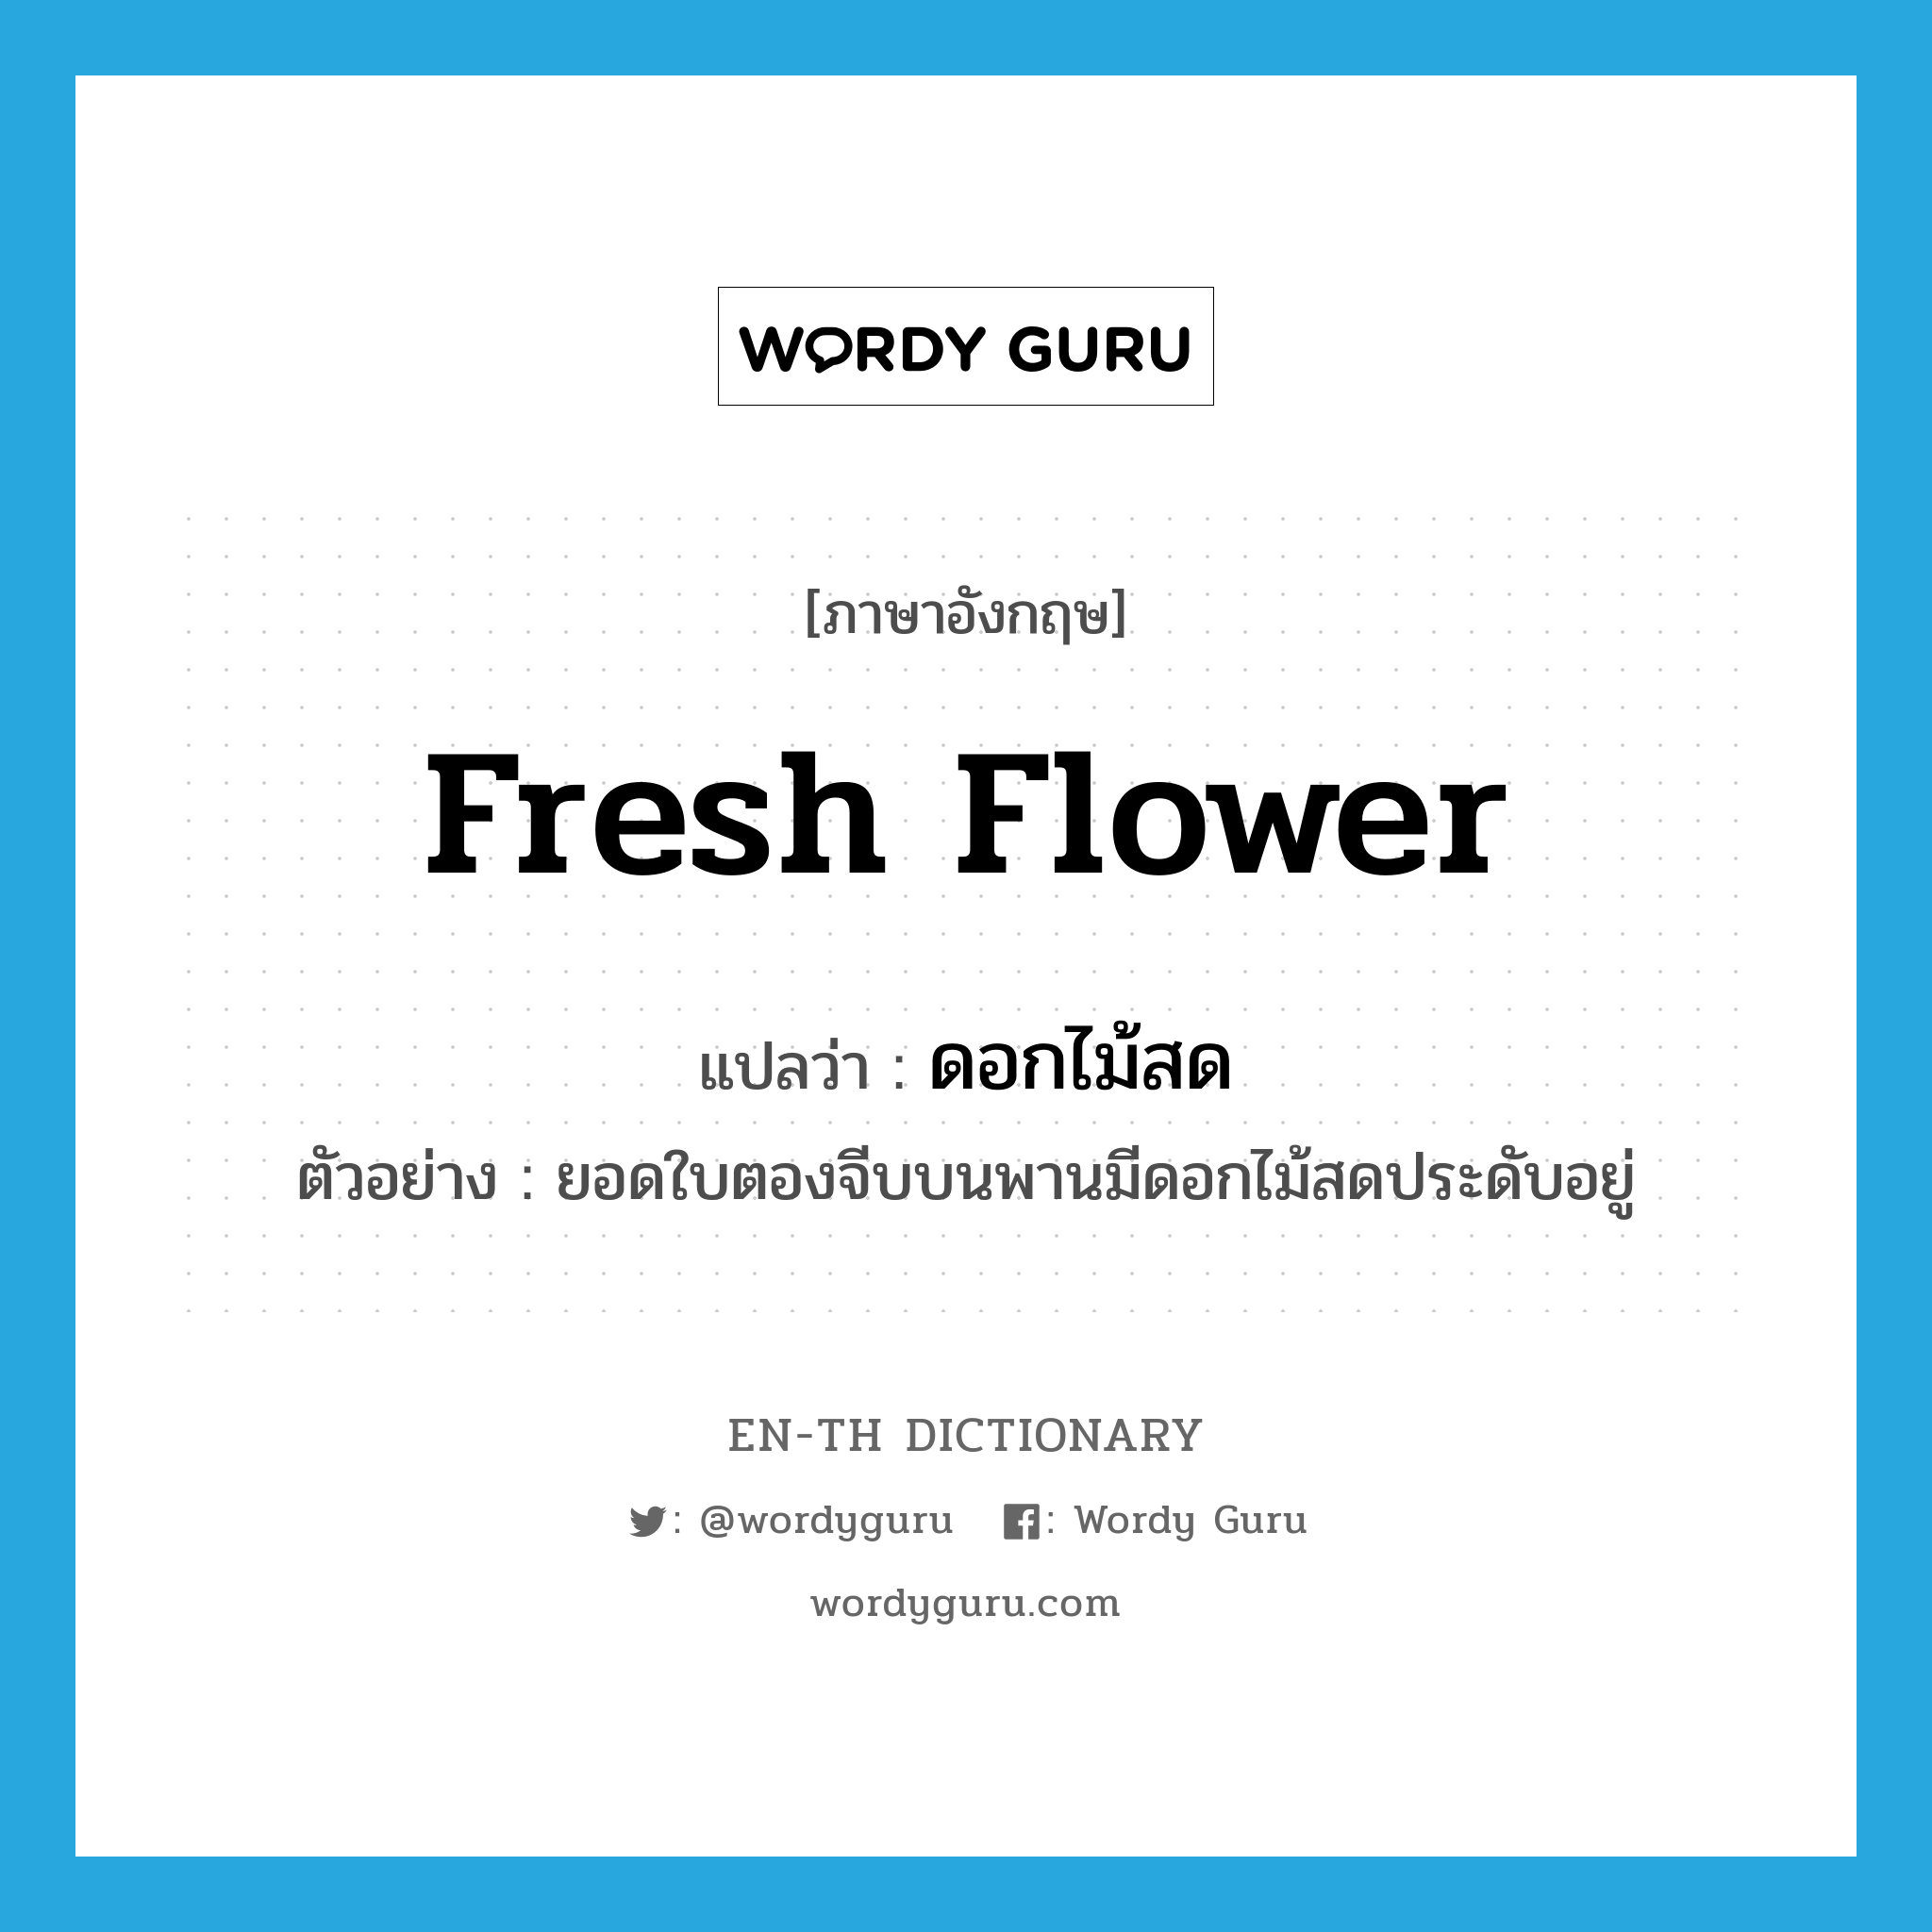 fresh flower แปลว่า?, คำศัพท์ภาษาอังกฤษ fresh flower แปลว่า ดอกไม้สด ประเภท N ตัวอย่าง ยอดใบตองจีบบนพานมีดอกไม้สดประดับอยู่ หมวด N